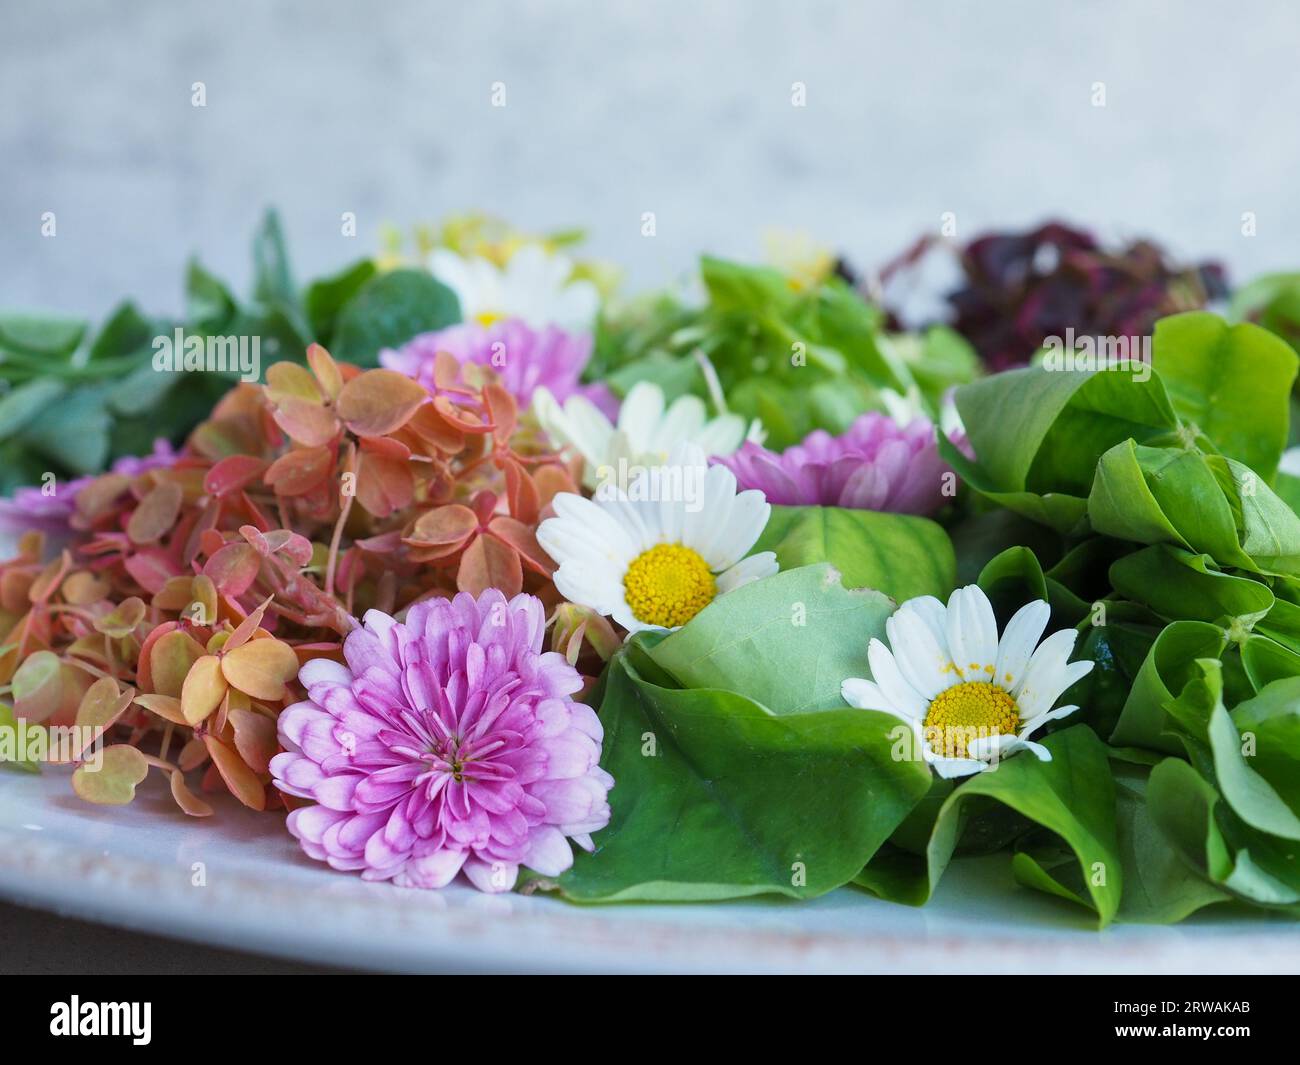 Primo piano di una bella insalata di fiori e foglie commestibili che rappresentano alimenti nutrienti, locali e sostenibili a base vegetale per la primavera e l'estate Foto Stock